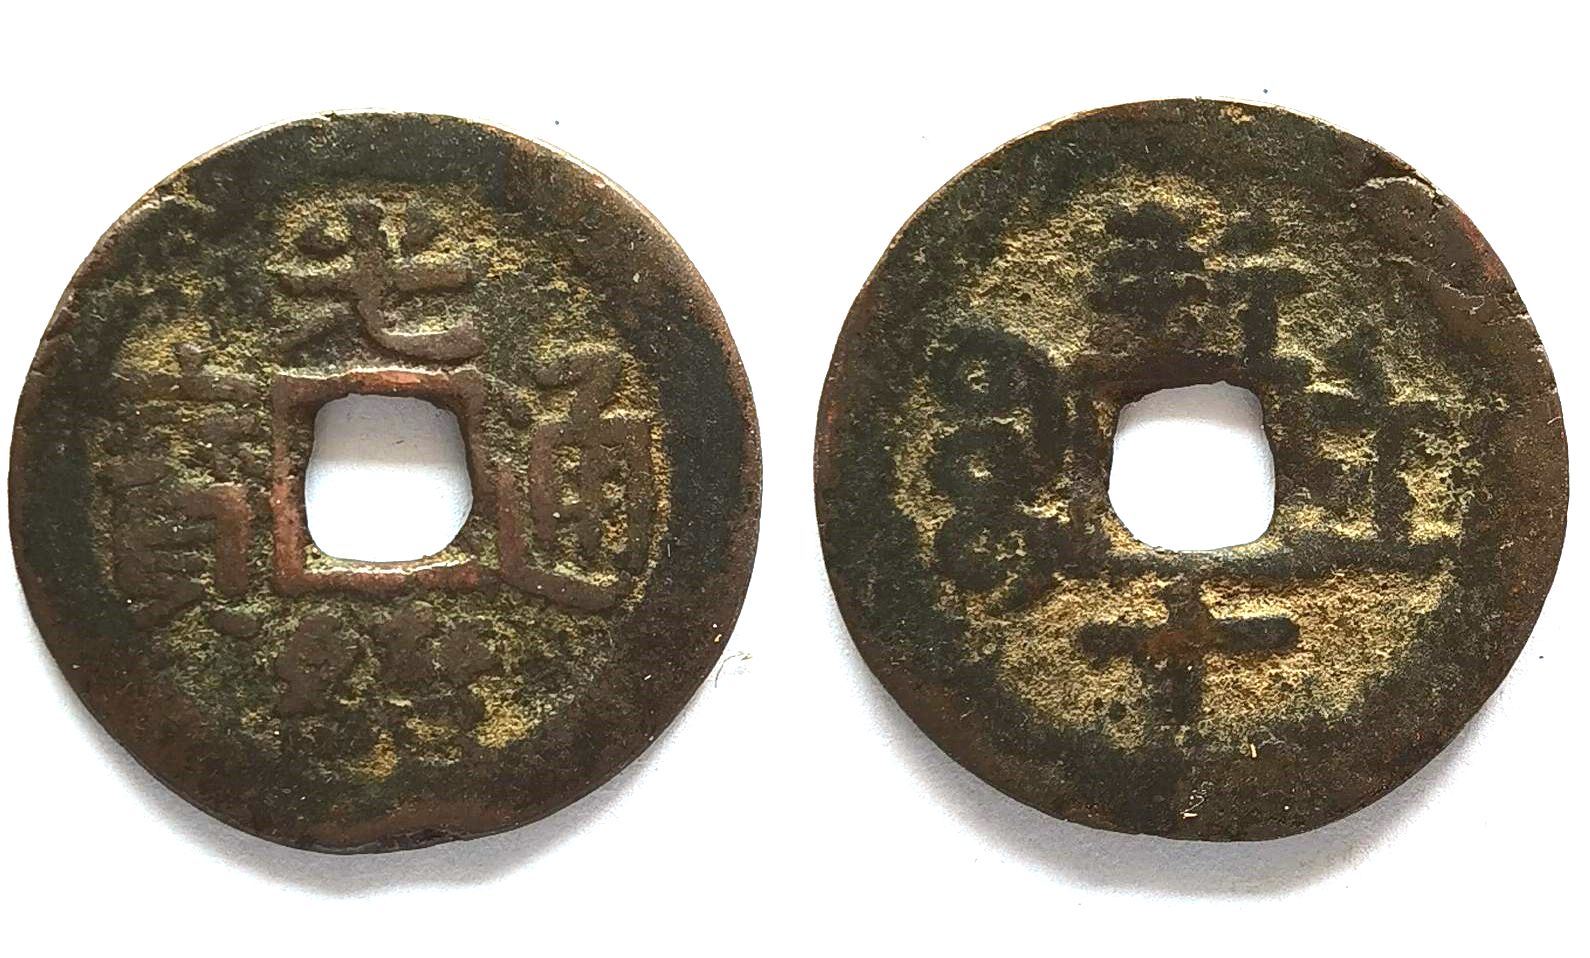 XJ2255, Sinkiang Red Coin, Guangxu Tong-Bao, New 10-cash Coin, China 1886